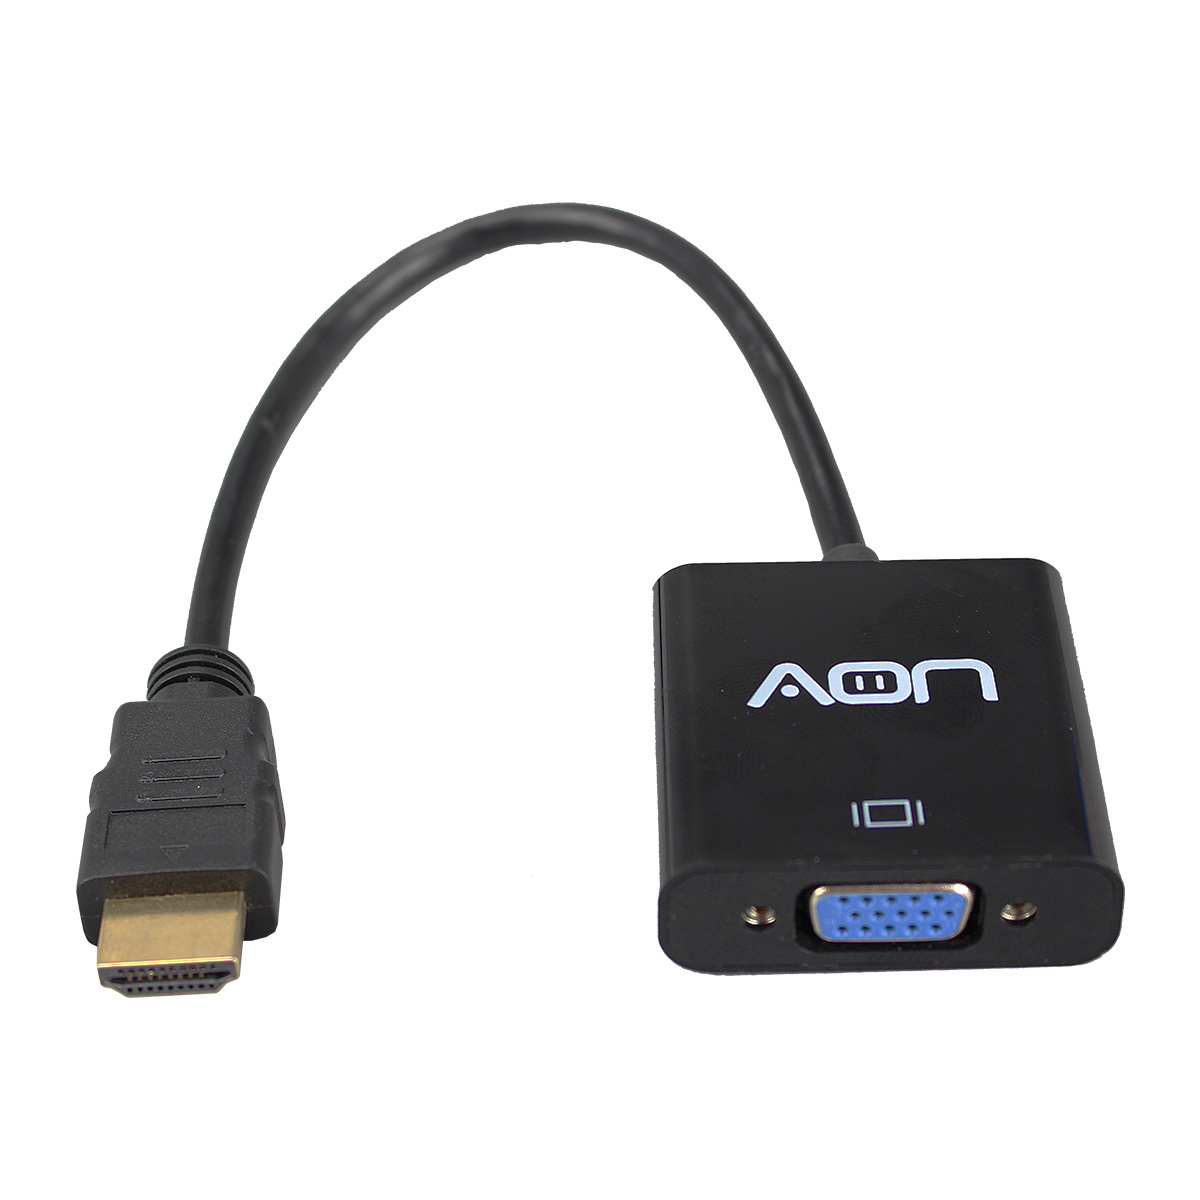 VGA a HDMI, todas las ventajas de adaptar la conexión - Euronics